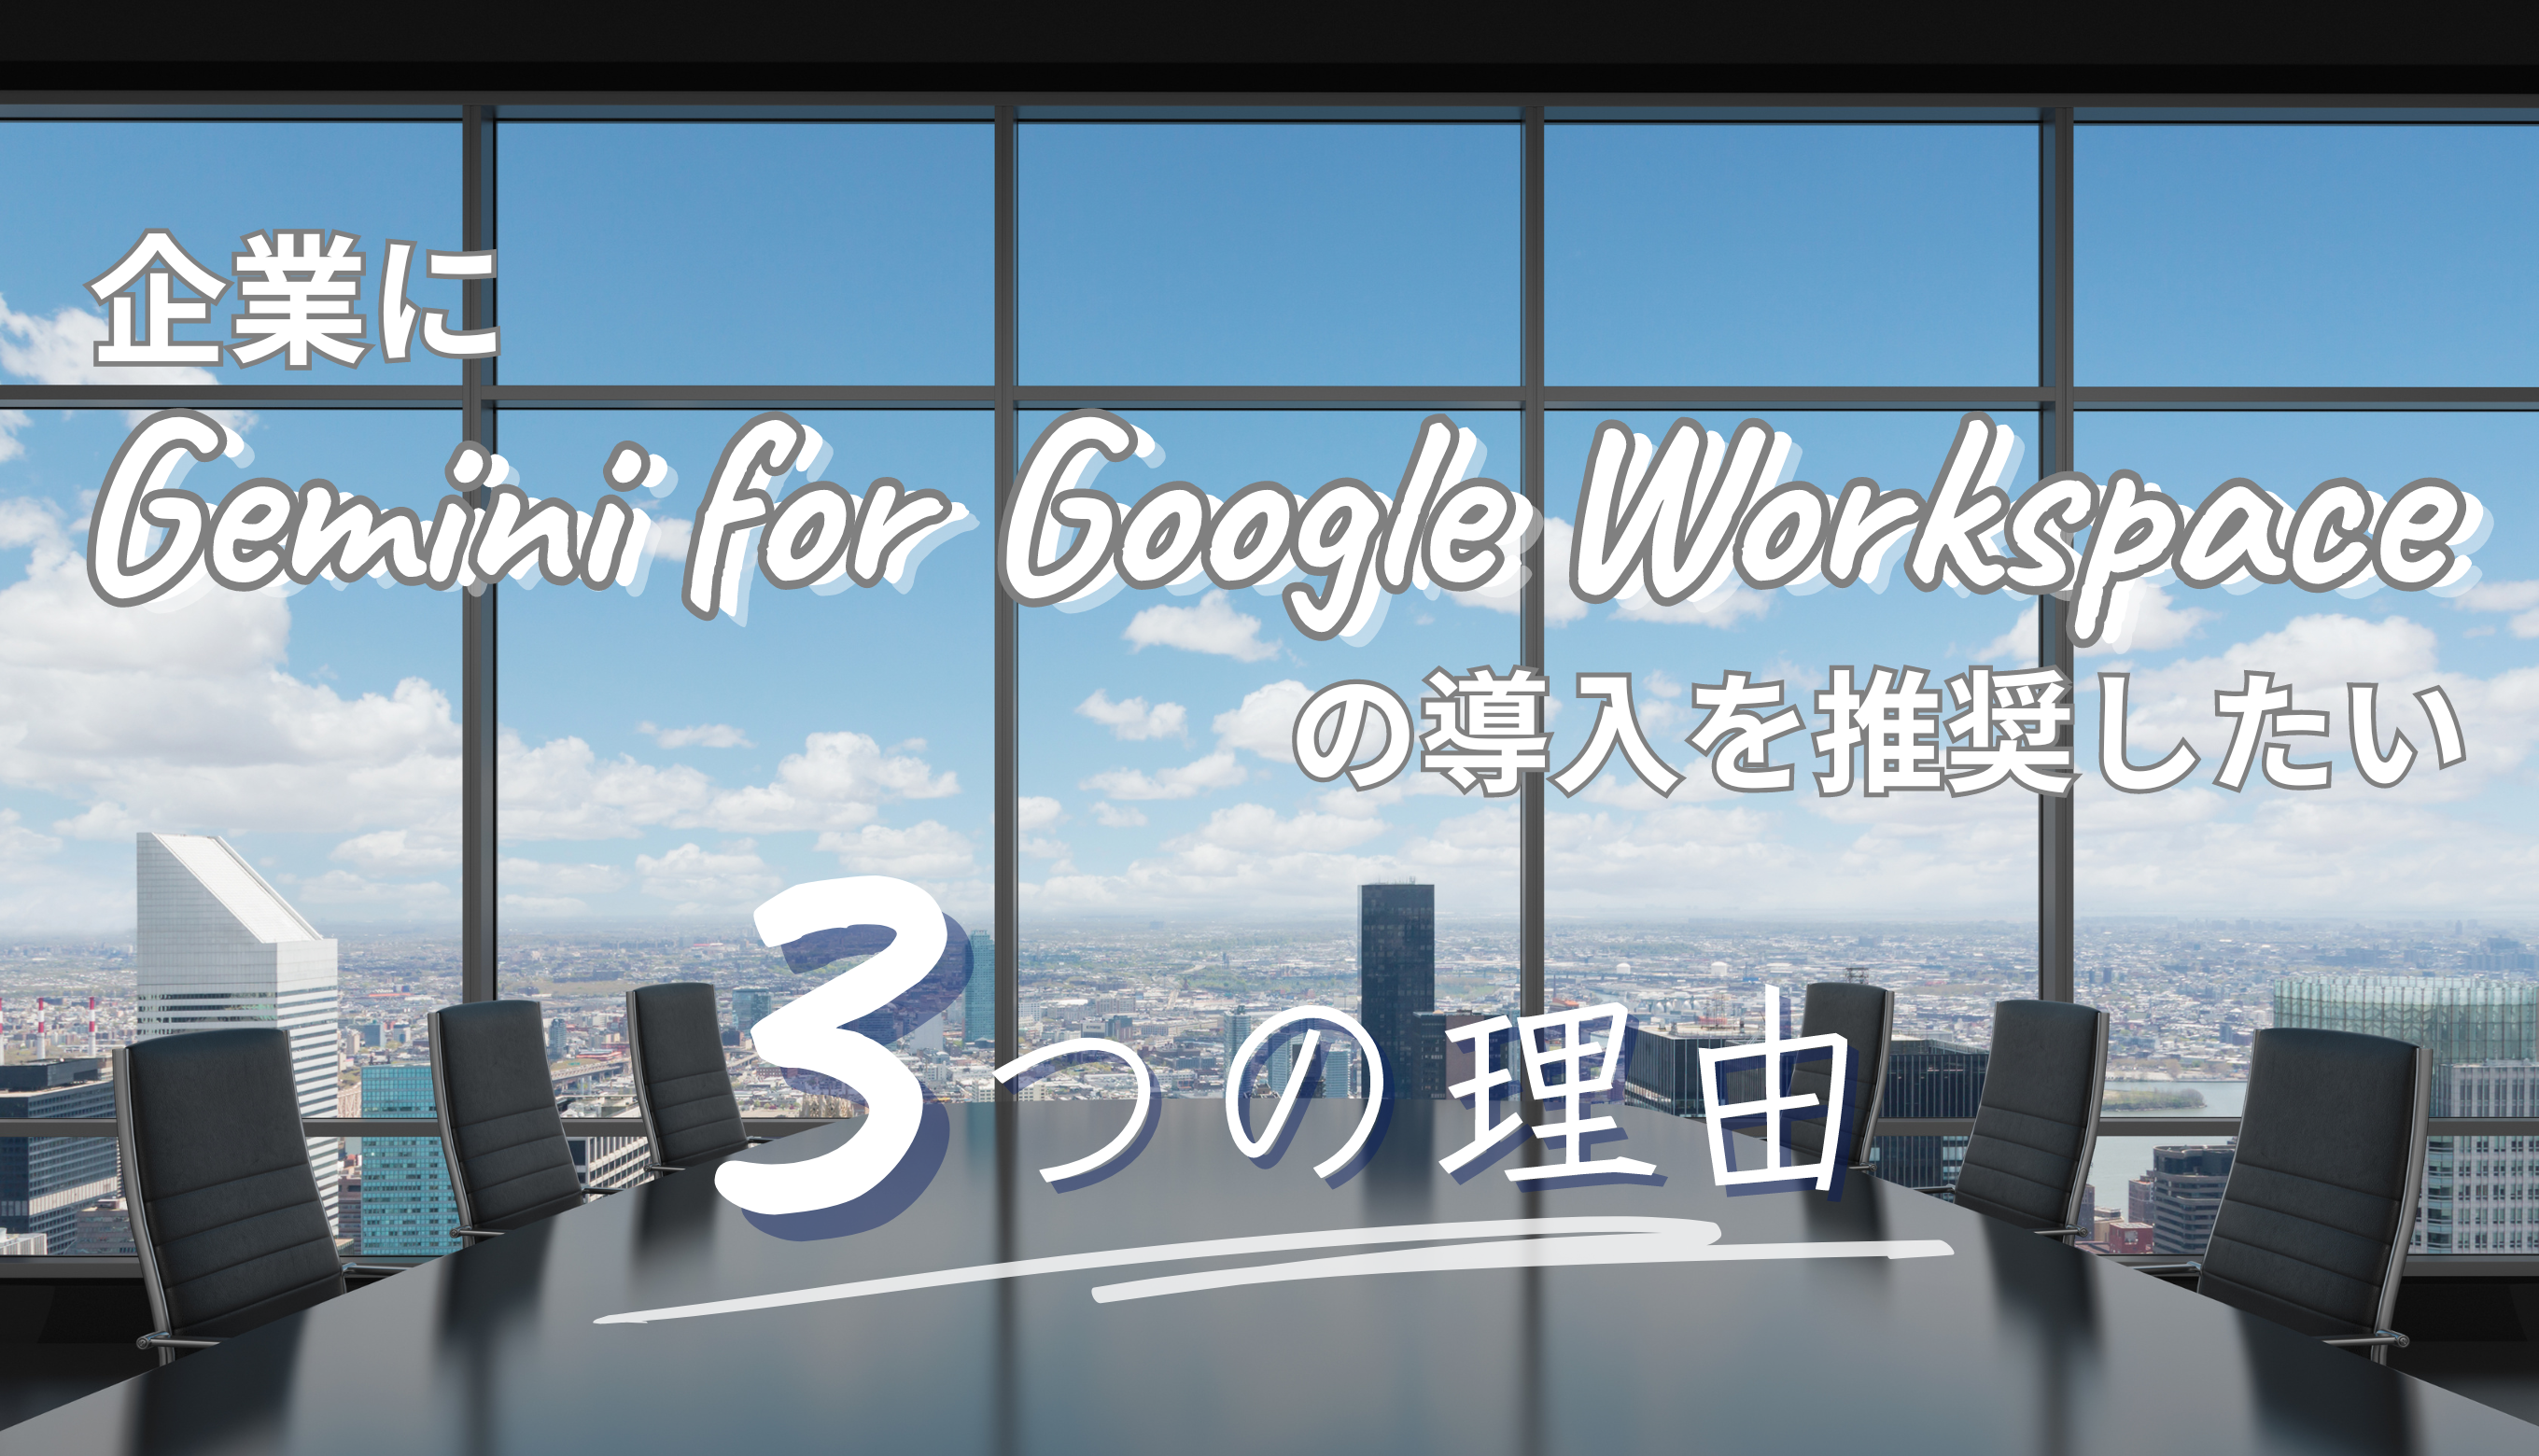 企業に Gemini for Google Workspace を推したい3つの理由サムネイル画像